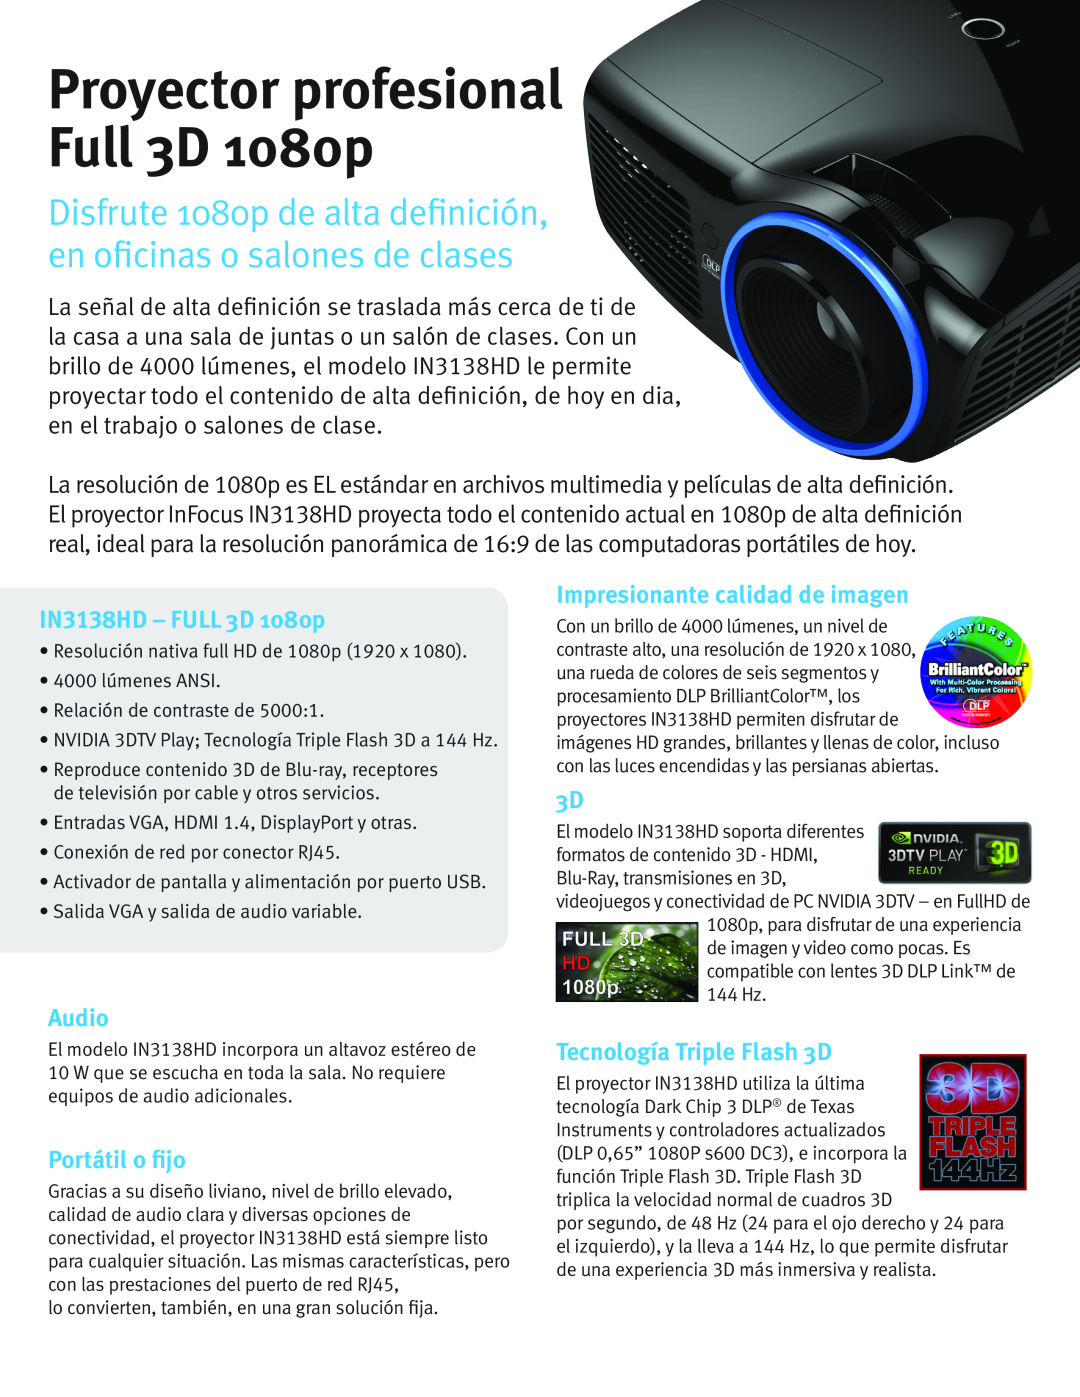 InFocus IN3138HD - FULL 3D 1080p, Audio, Portátil o fijo, Impresionante calidad de imagen, Tecnología Triple Flash 3D 